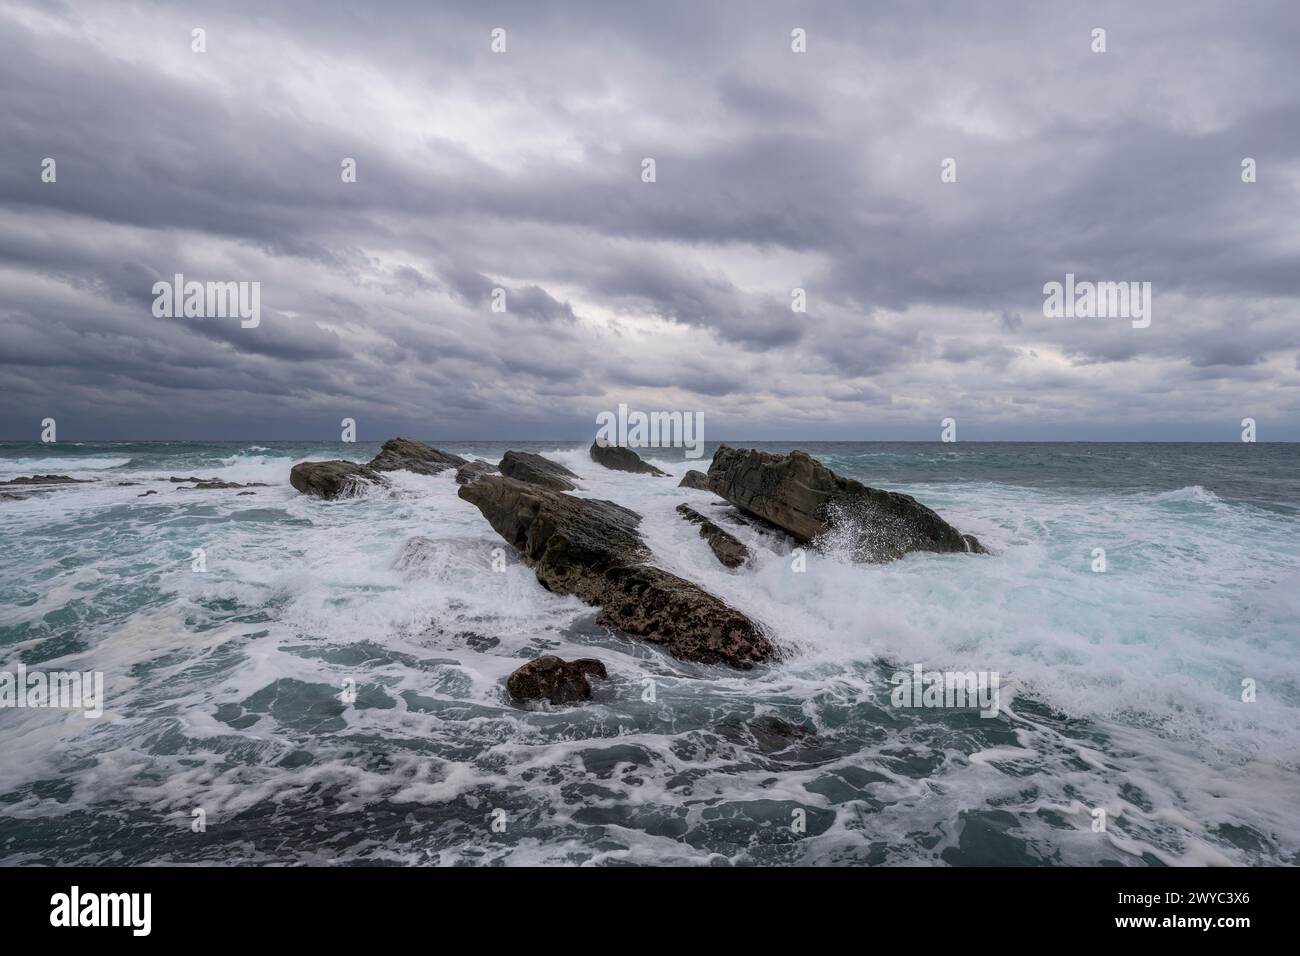 Des formations rocheuses captivantes sur fond de puissantes vagues à sommet blanc sous un ciel orageux Banque D'Images